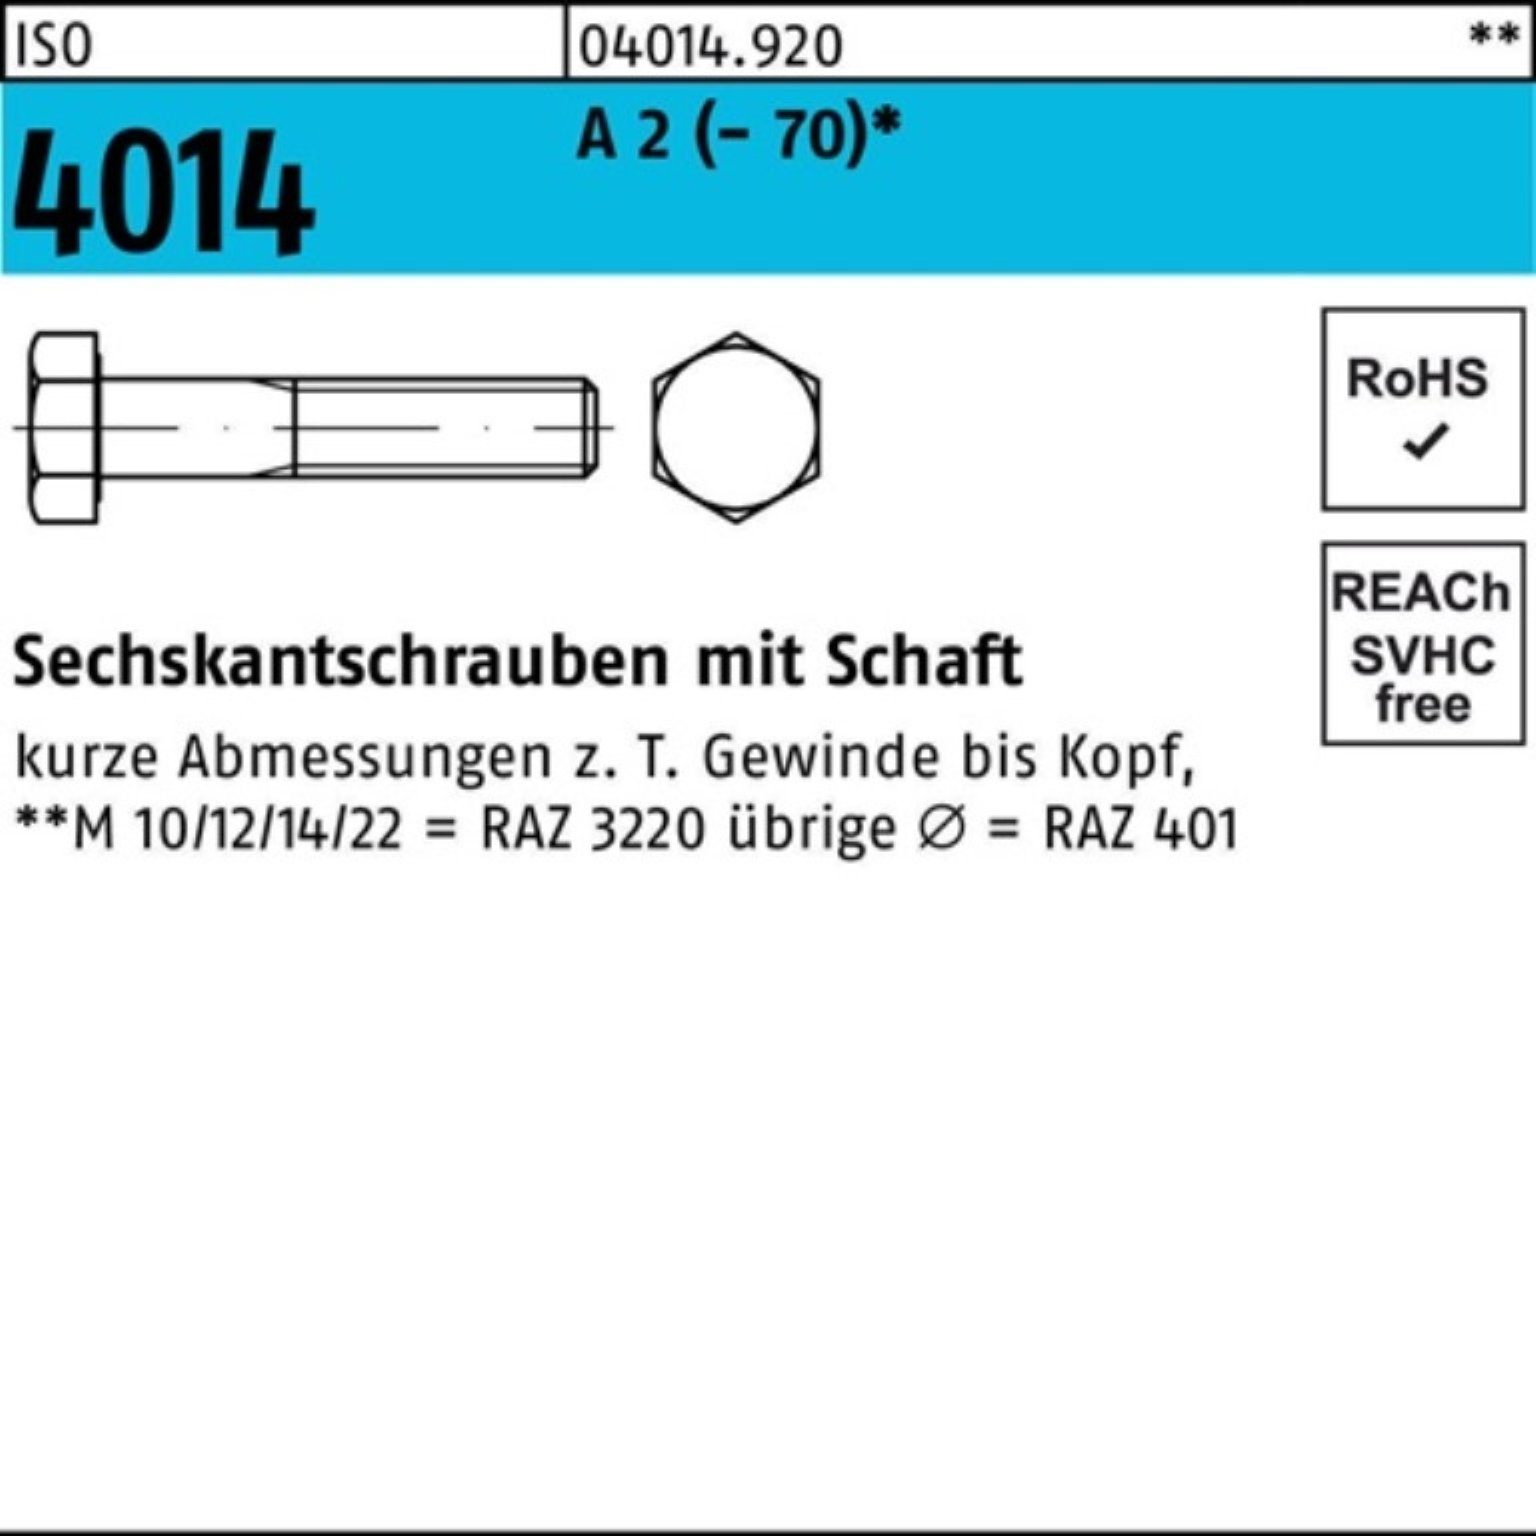 Bufab Sechskantschraube 100er Pack Sechskantschraube ISO 4014 Schaft M27x 130 A 2 (70) 1 St